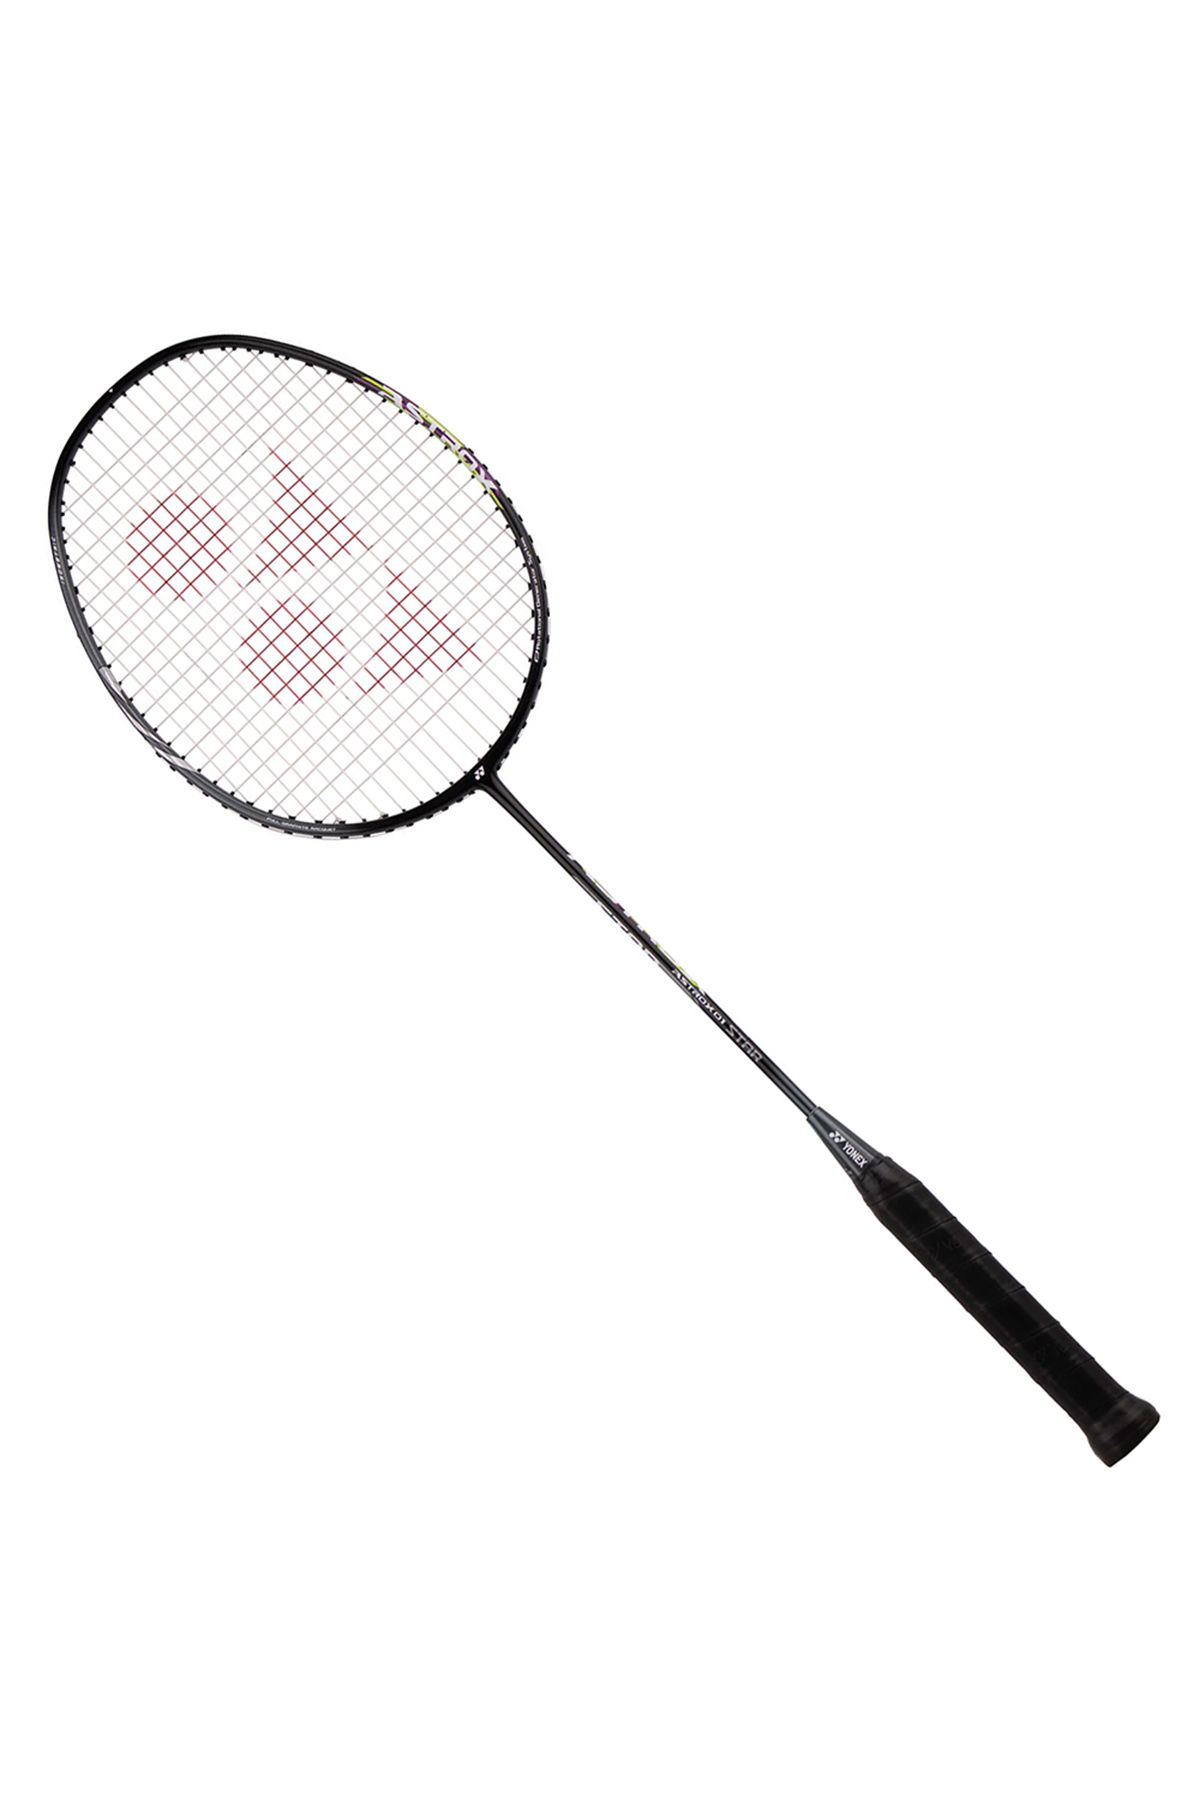 Yonex Astrox 01 Star Badminton Raketi